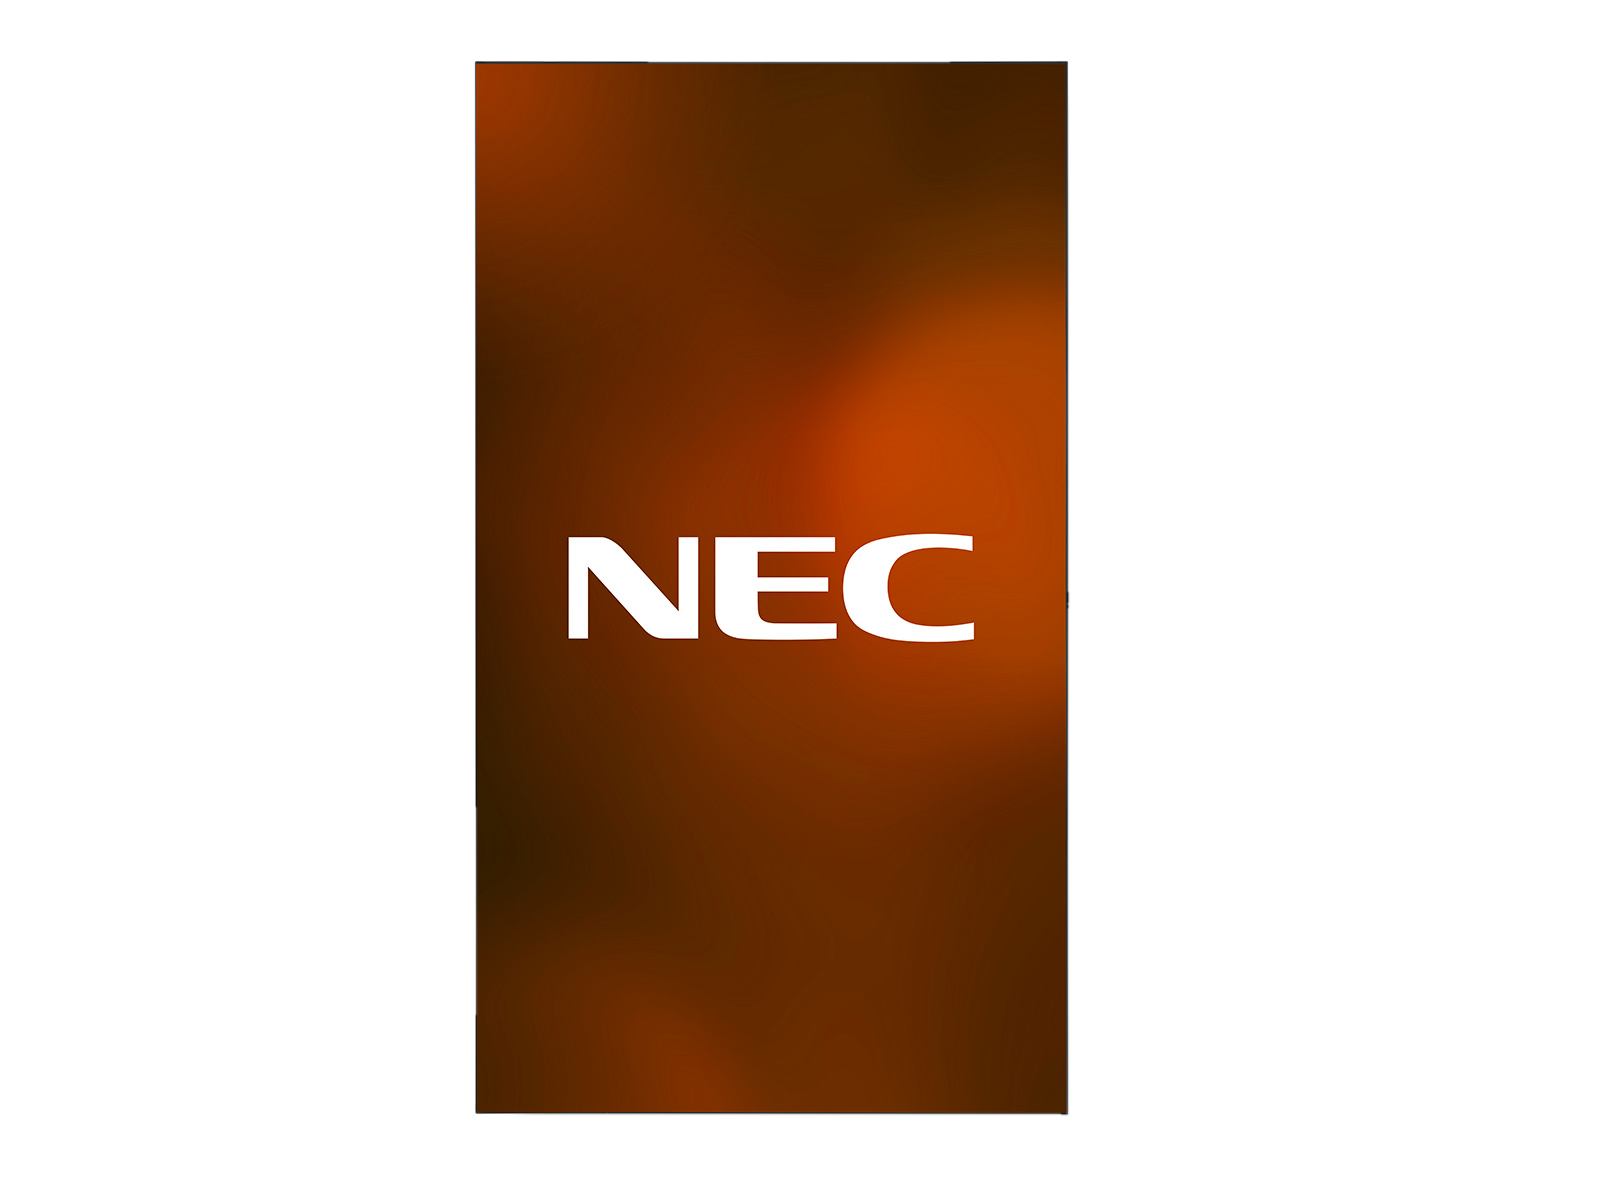 NEC_UN462A_HO_Port_content-logo_1600x1200-4